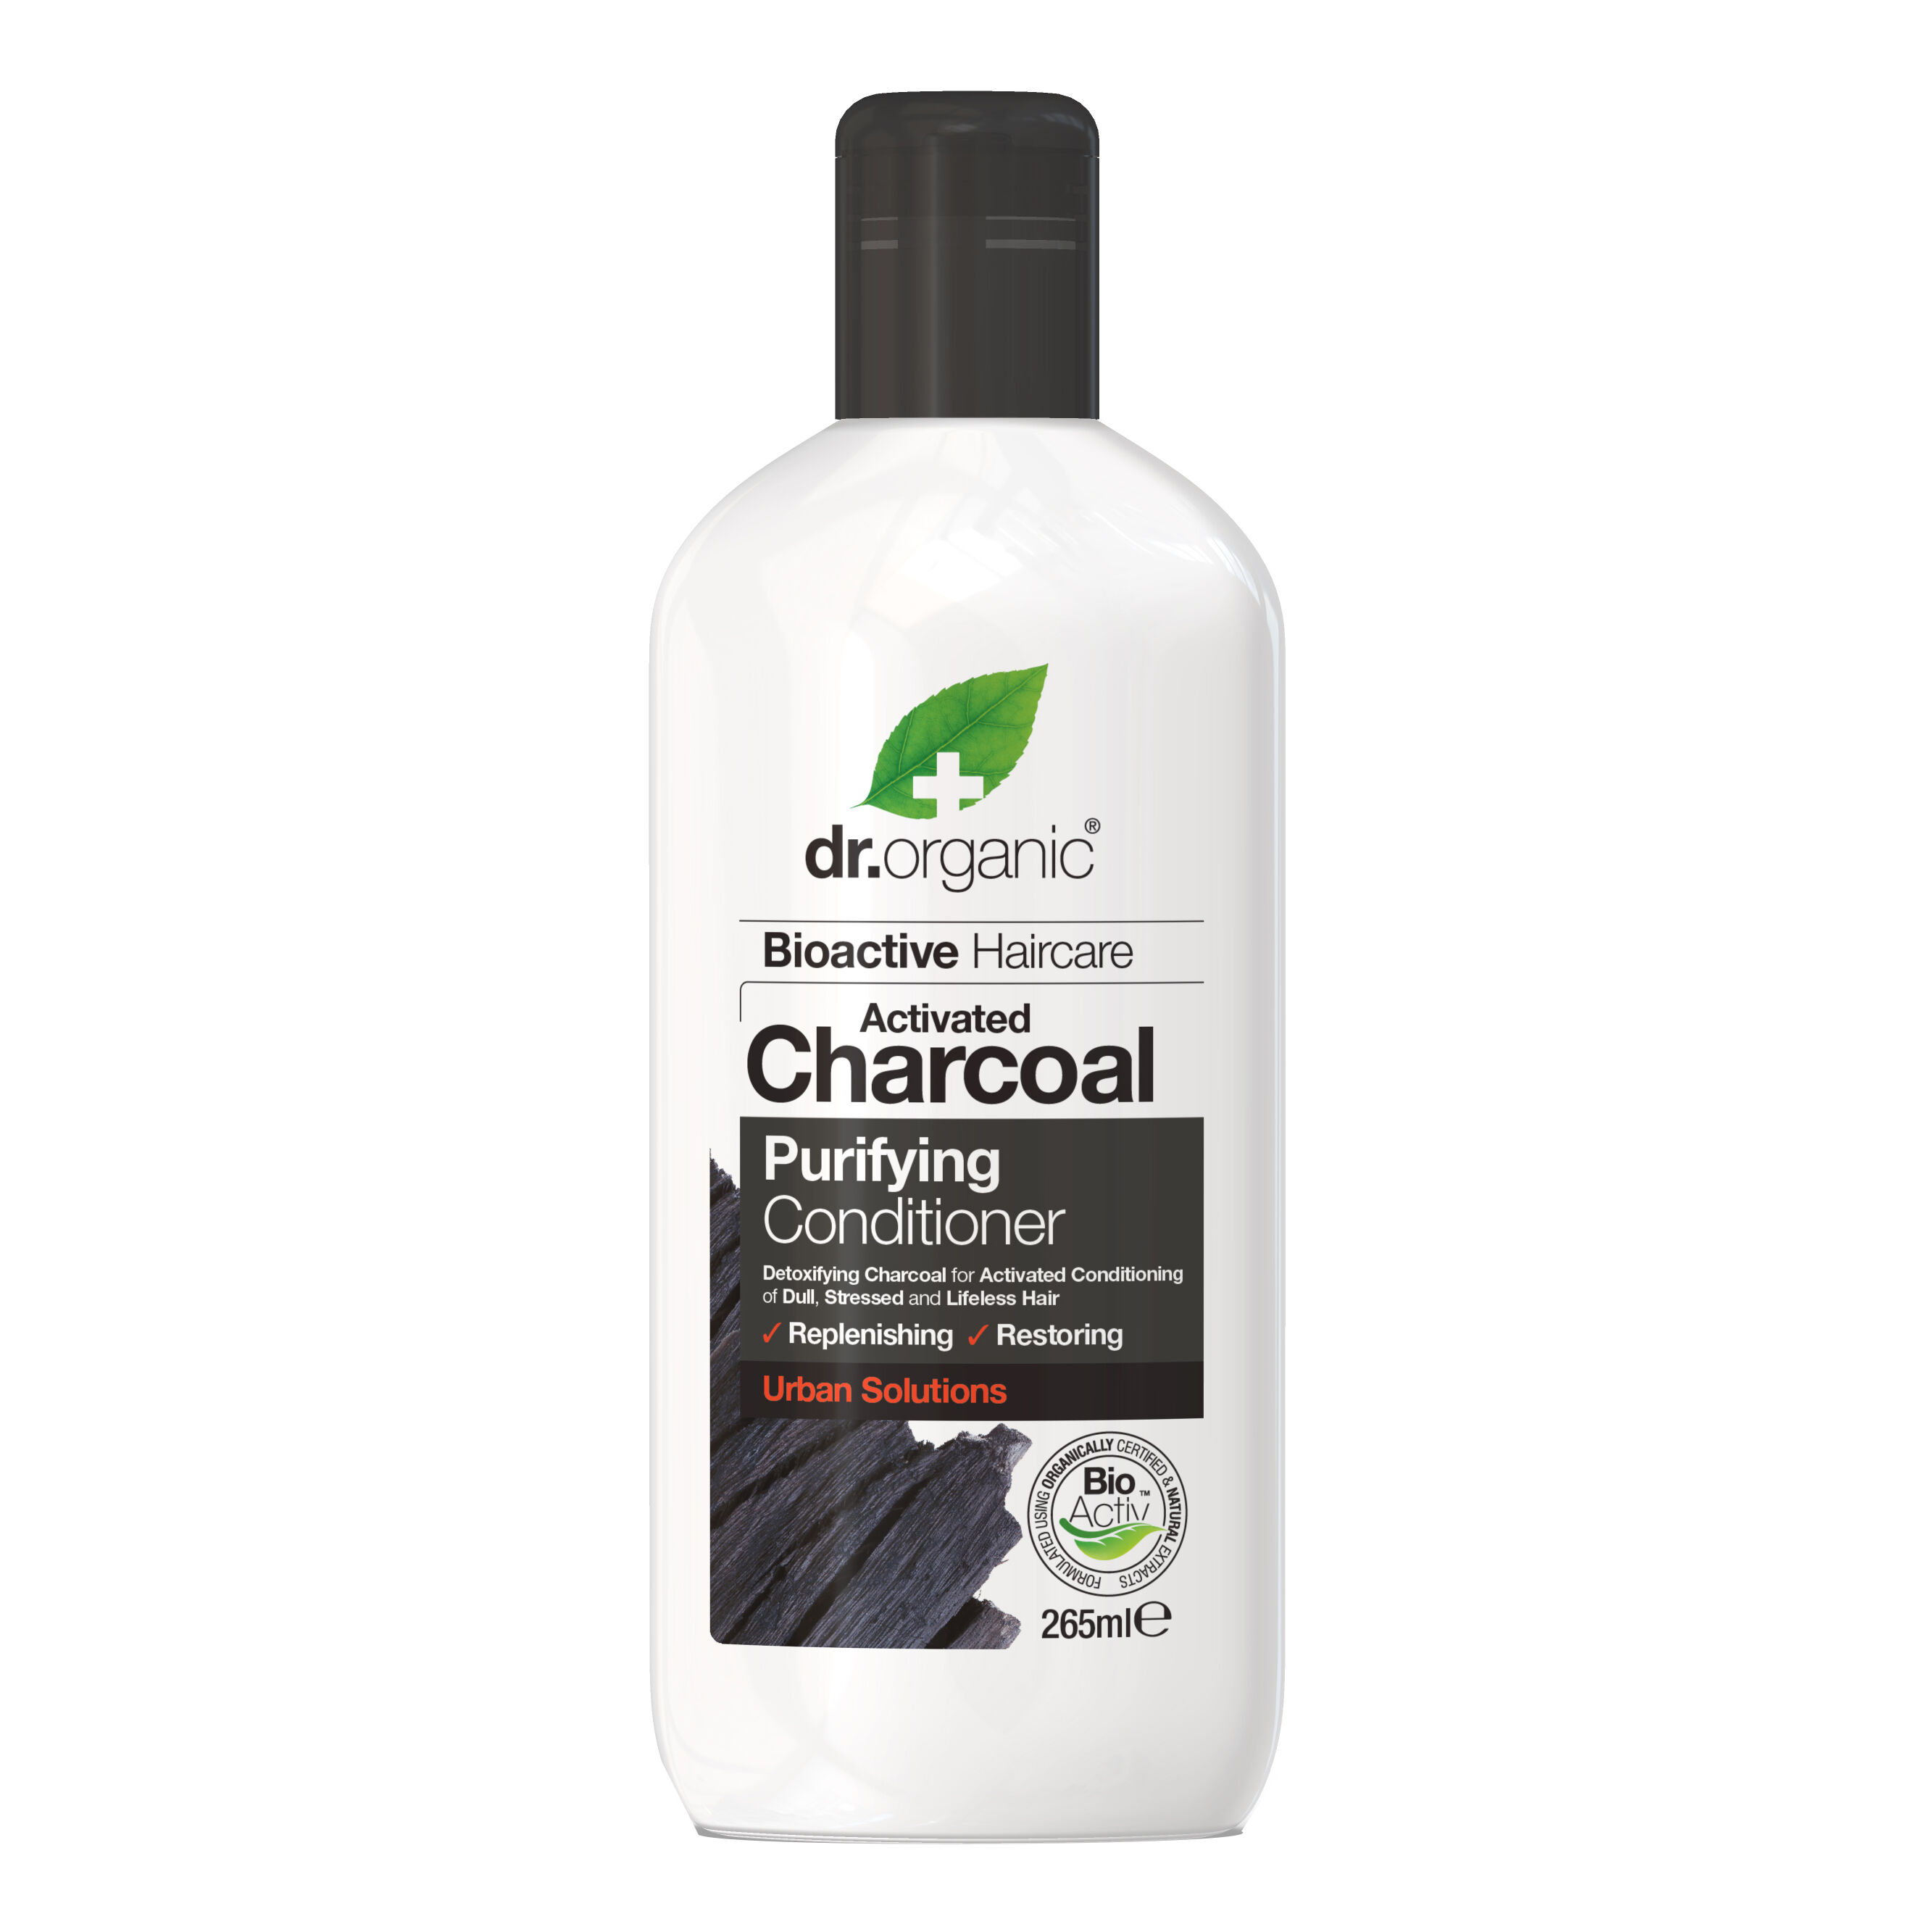 OPTIMA NATURALS Srl Dr organic charcoal carbone attivo conditioner balsamo 265 ml